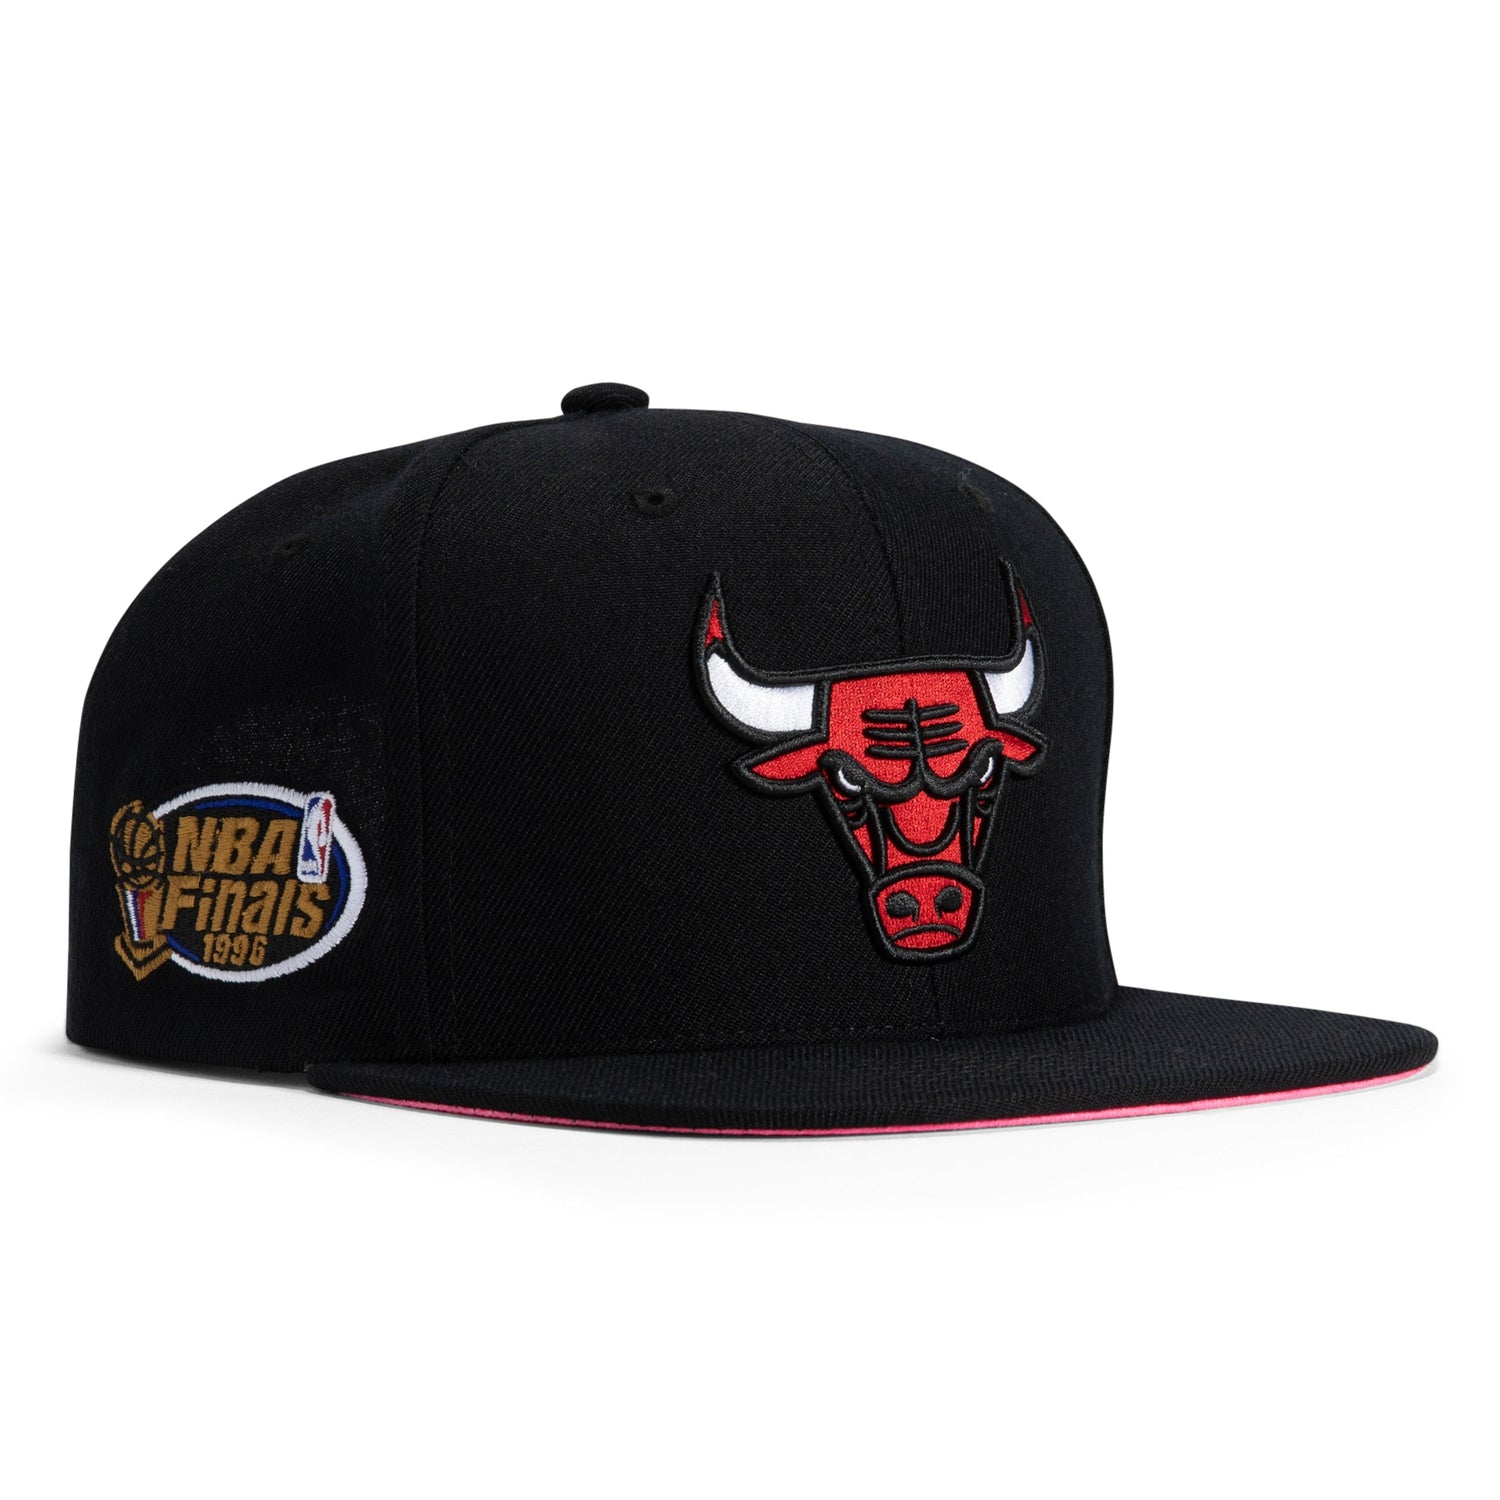 Mitchell & Ness Pop UV Chicago Bulls Snapback Hat - White